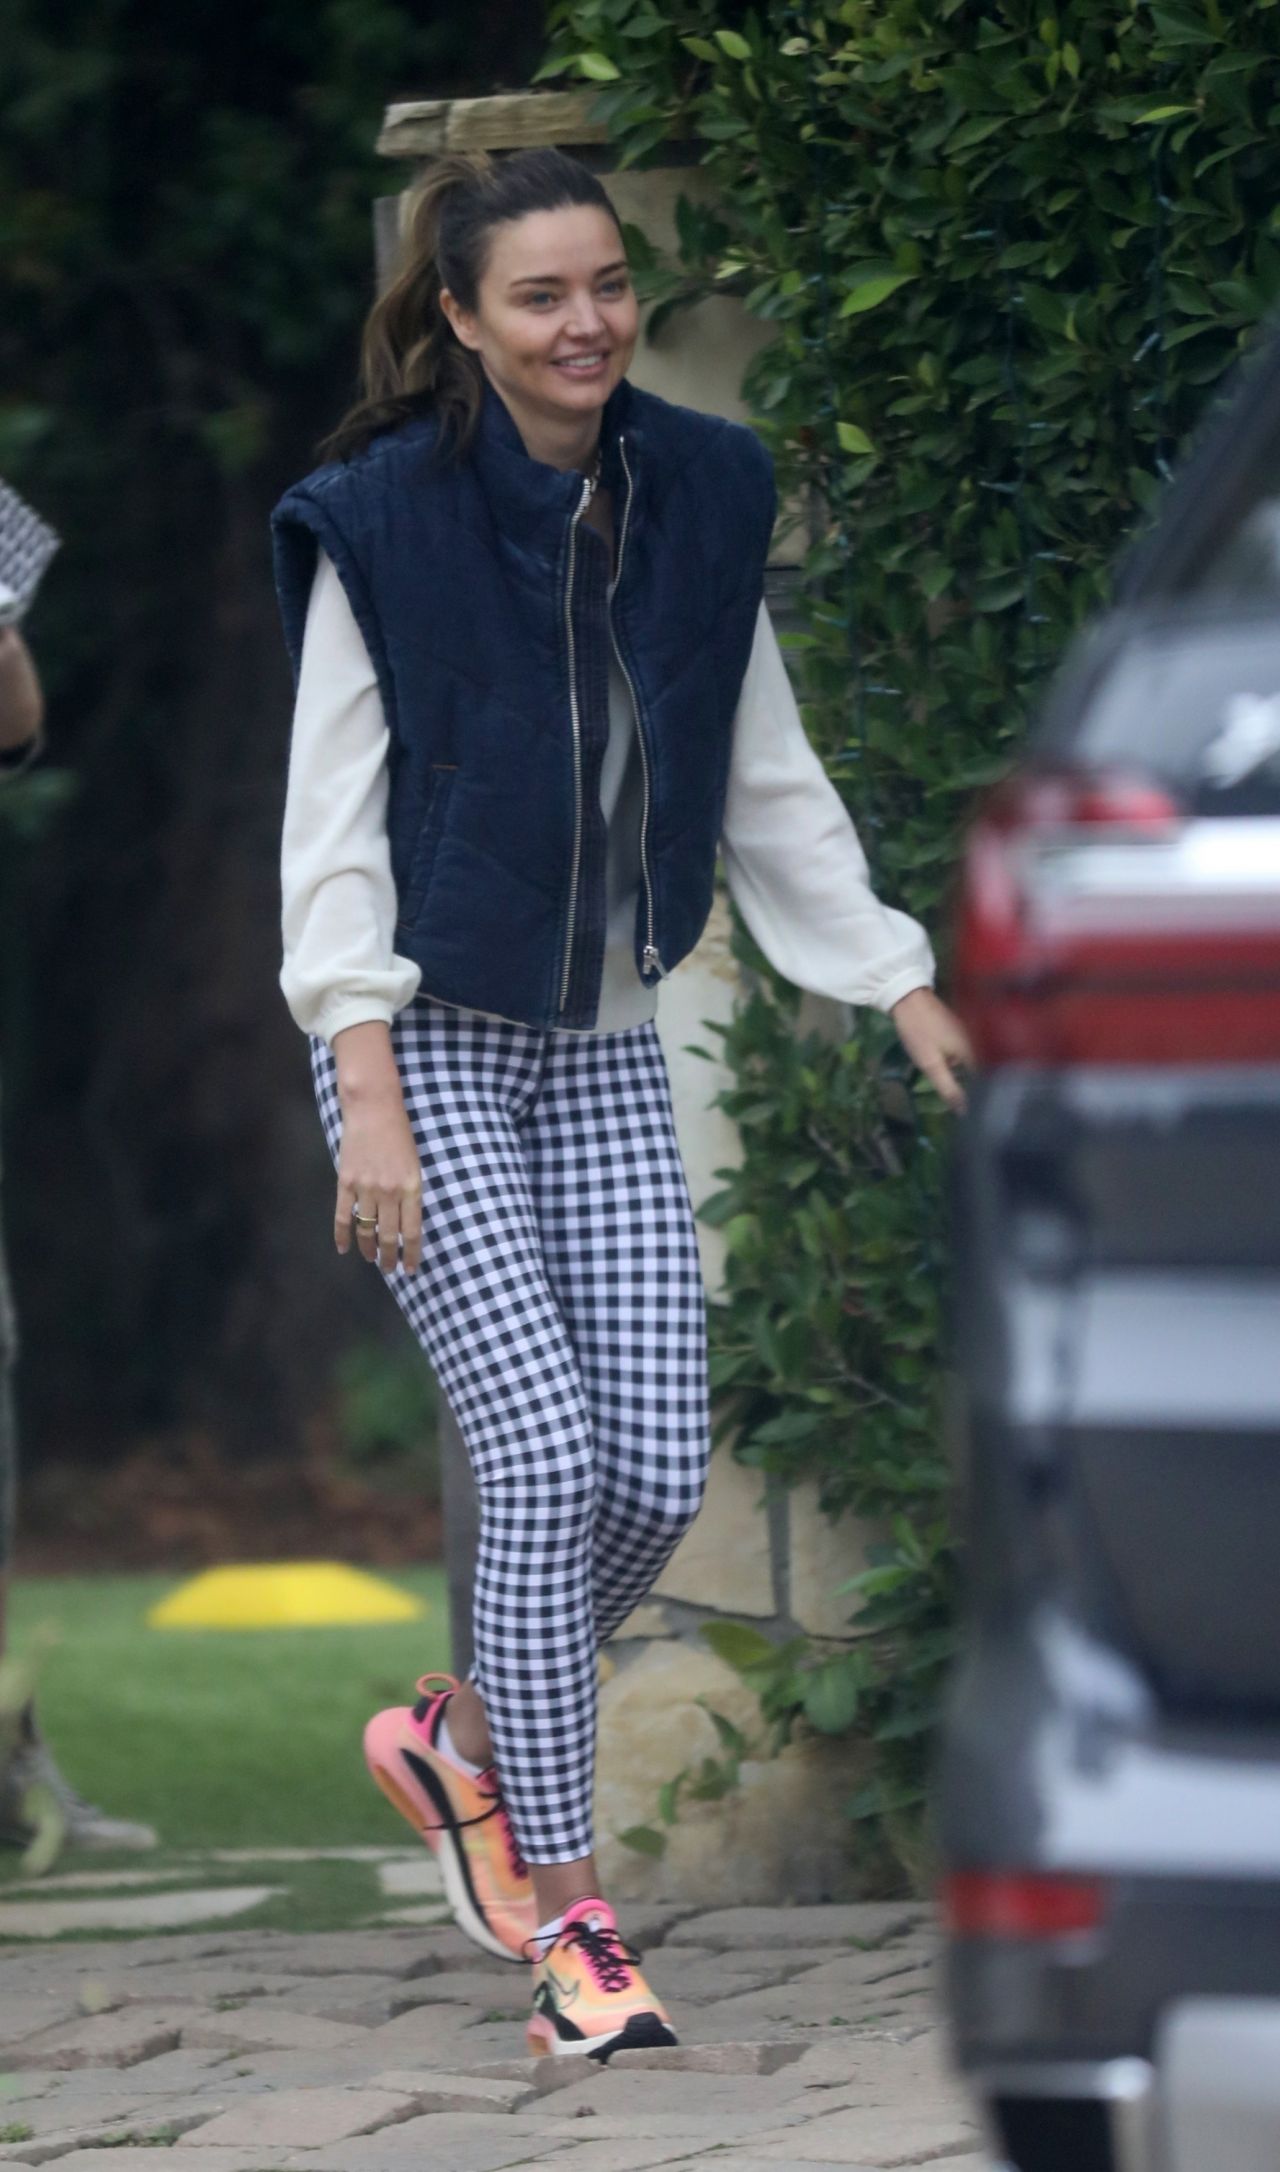 Miranda Kerr Los Angeles October 17, 2022 – Star Style